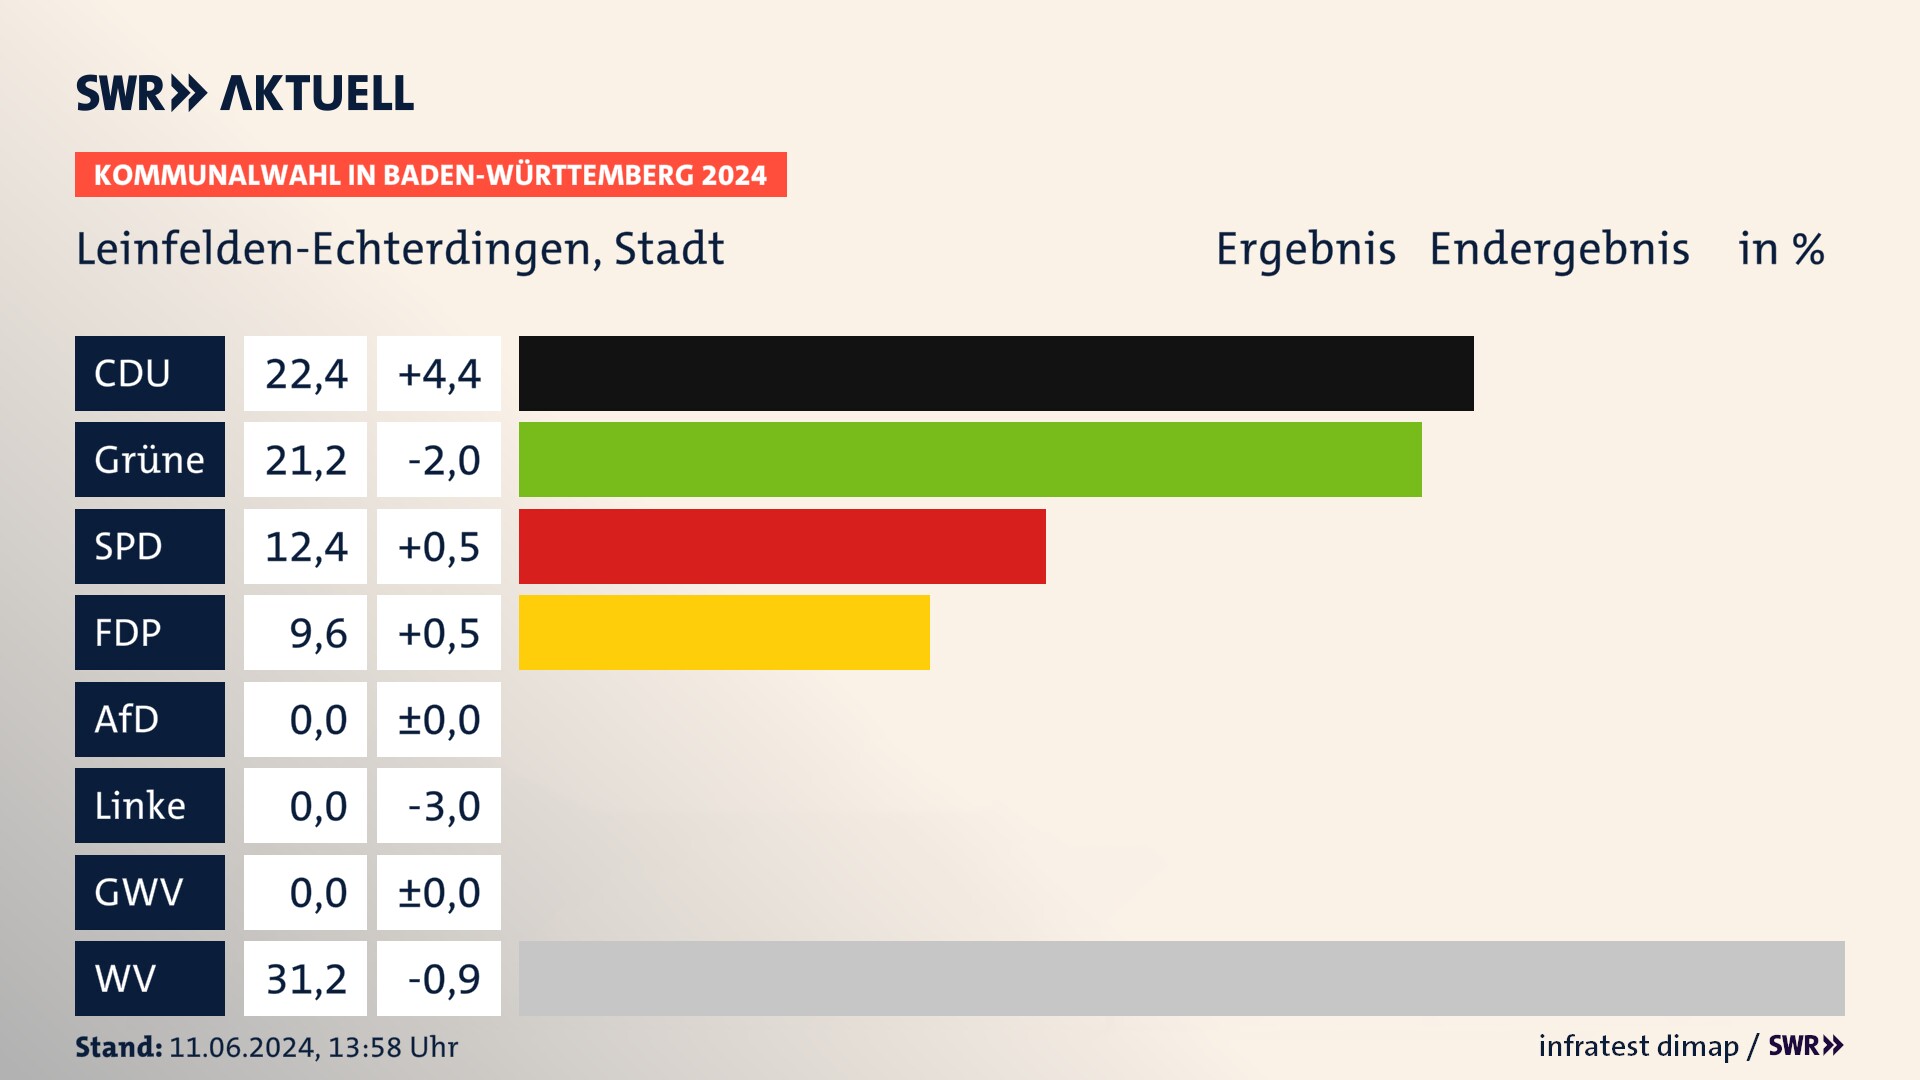 Kommunalwahl 2024 Endergebnis Zweitstimme für Leinfelden-Echterdingen. In Leinfelden-Echterdingen, Stadt erzielt die CDU 22,4 Prozent der gültigen  Stimmen. Die Grünen landen bei 21,2 Prozent. Die SPD erreicht 12,4 Prozent. Die FDP kommt auf 9,6 Prozent. Die Wählervereinigungen landen bei 31,2 Prozent.